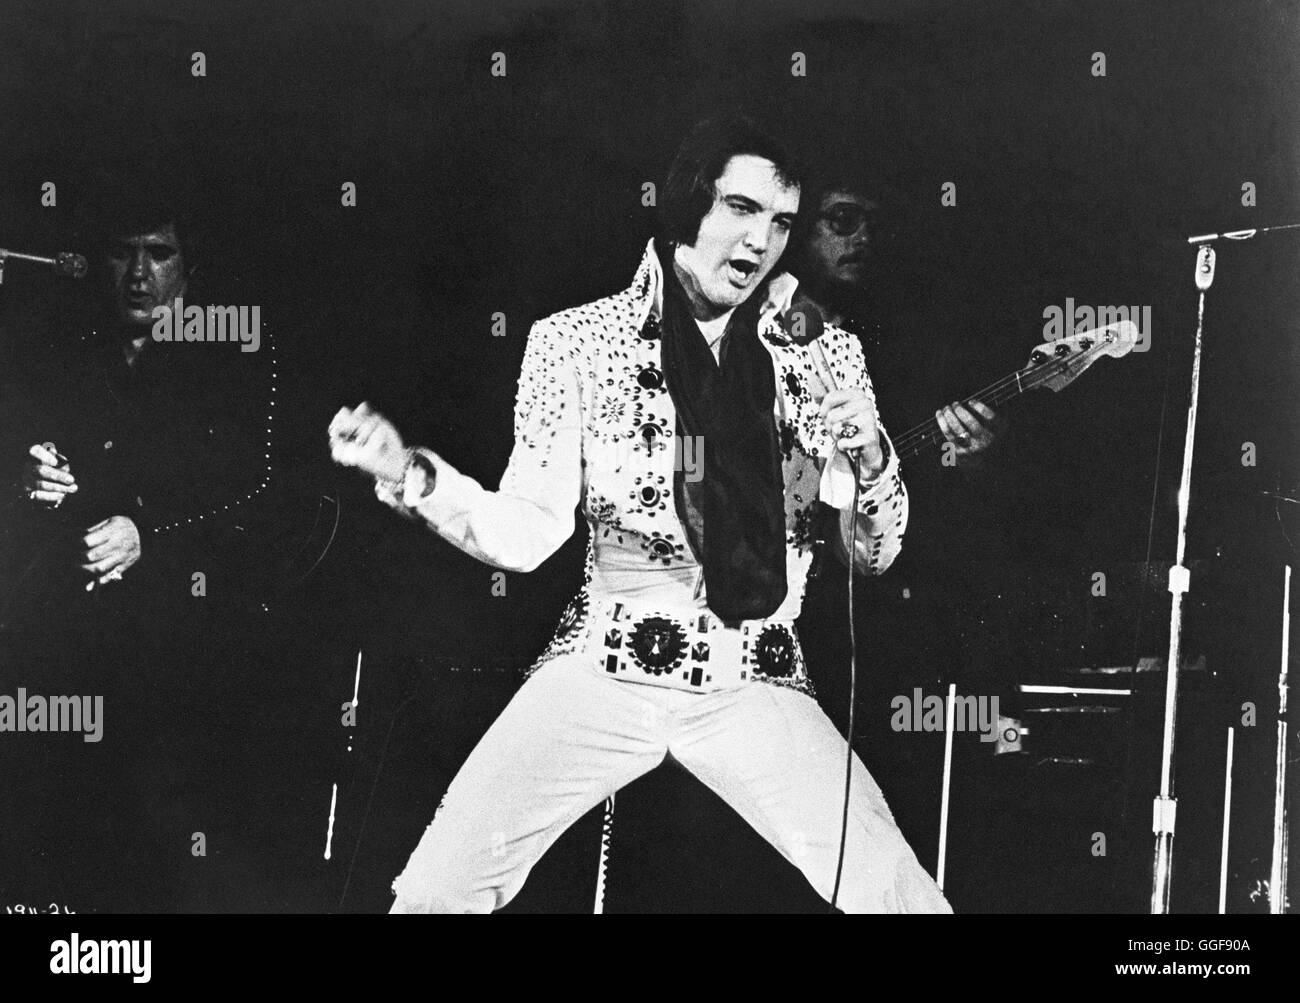 ELVIS ON TOUR / Elvis On Tour USA 1972 / Pierre Adidge, Robert Adel Aufzeichnung von Konzert-Tournee durch die USA 1972, mit, Filmausschnitten Auftritten und Interviews. Bild : ELVIS PRESLEY en tournée, 1972./ Regie : Pierre Adidge, Robert Adel aka. Elvis On Tour Banque D'Images